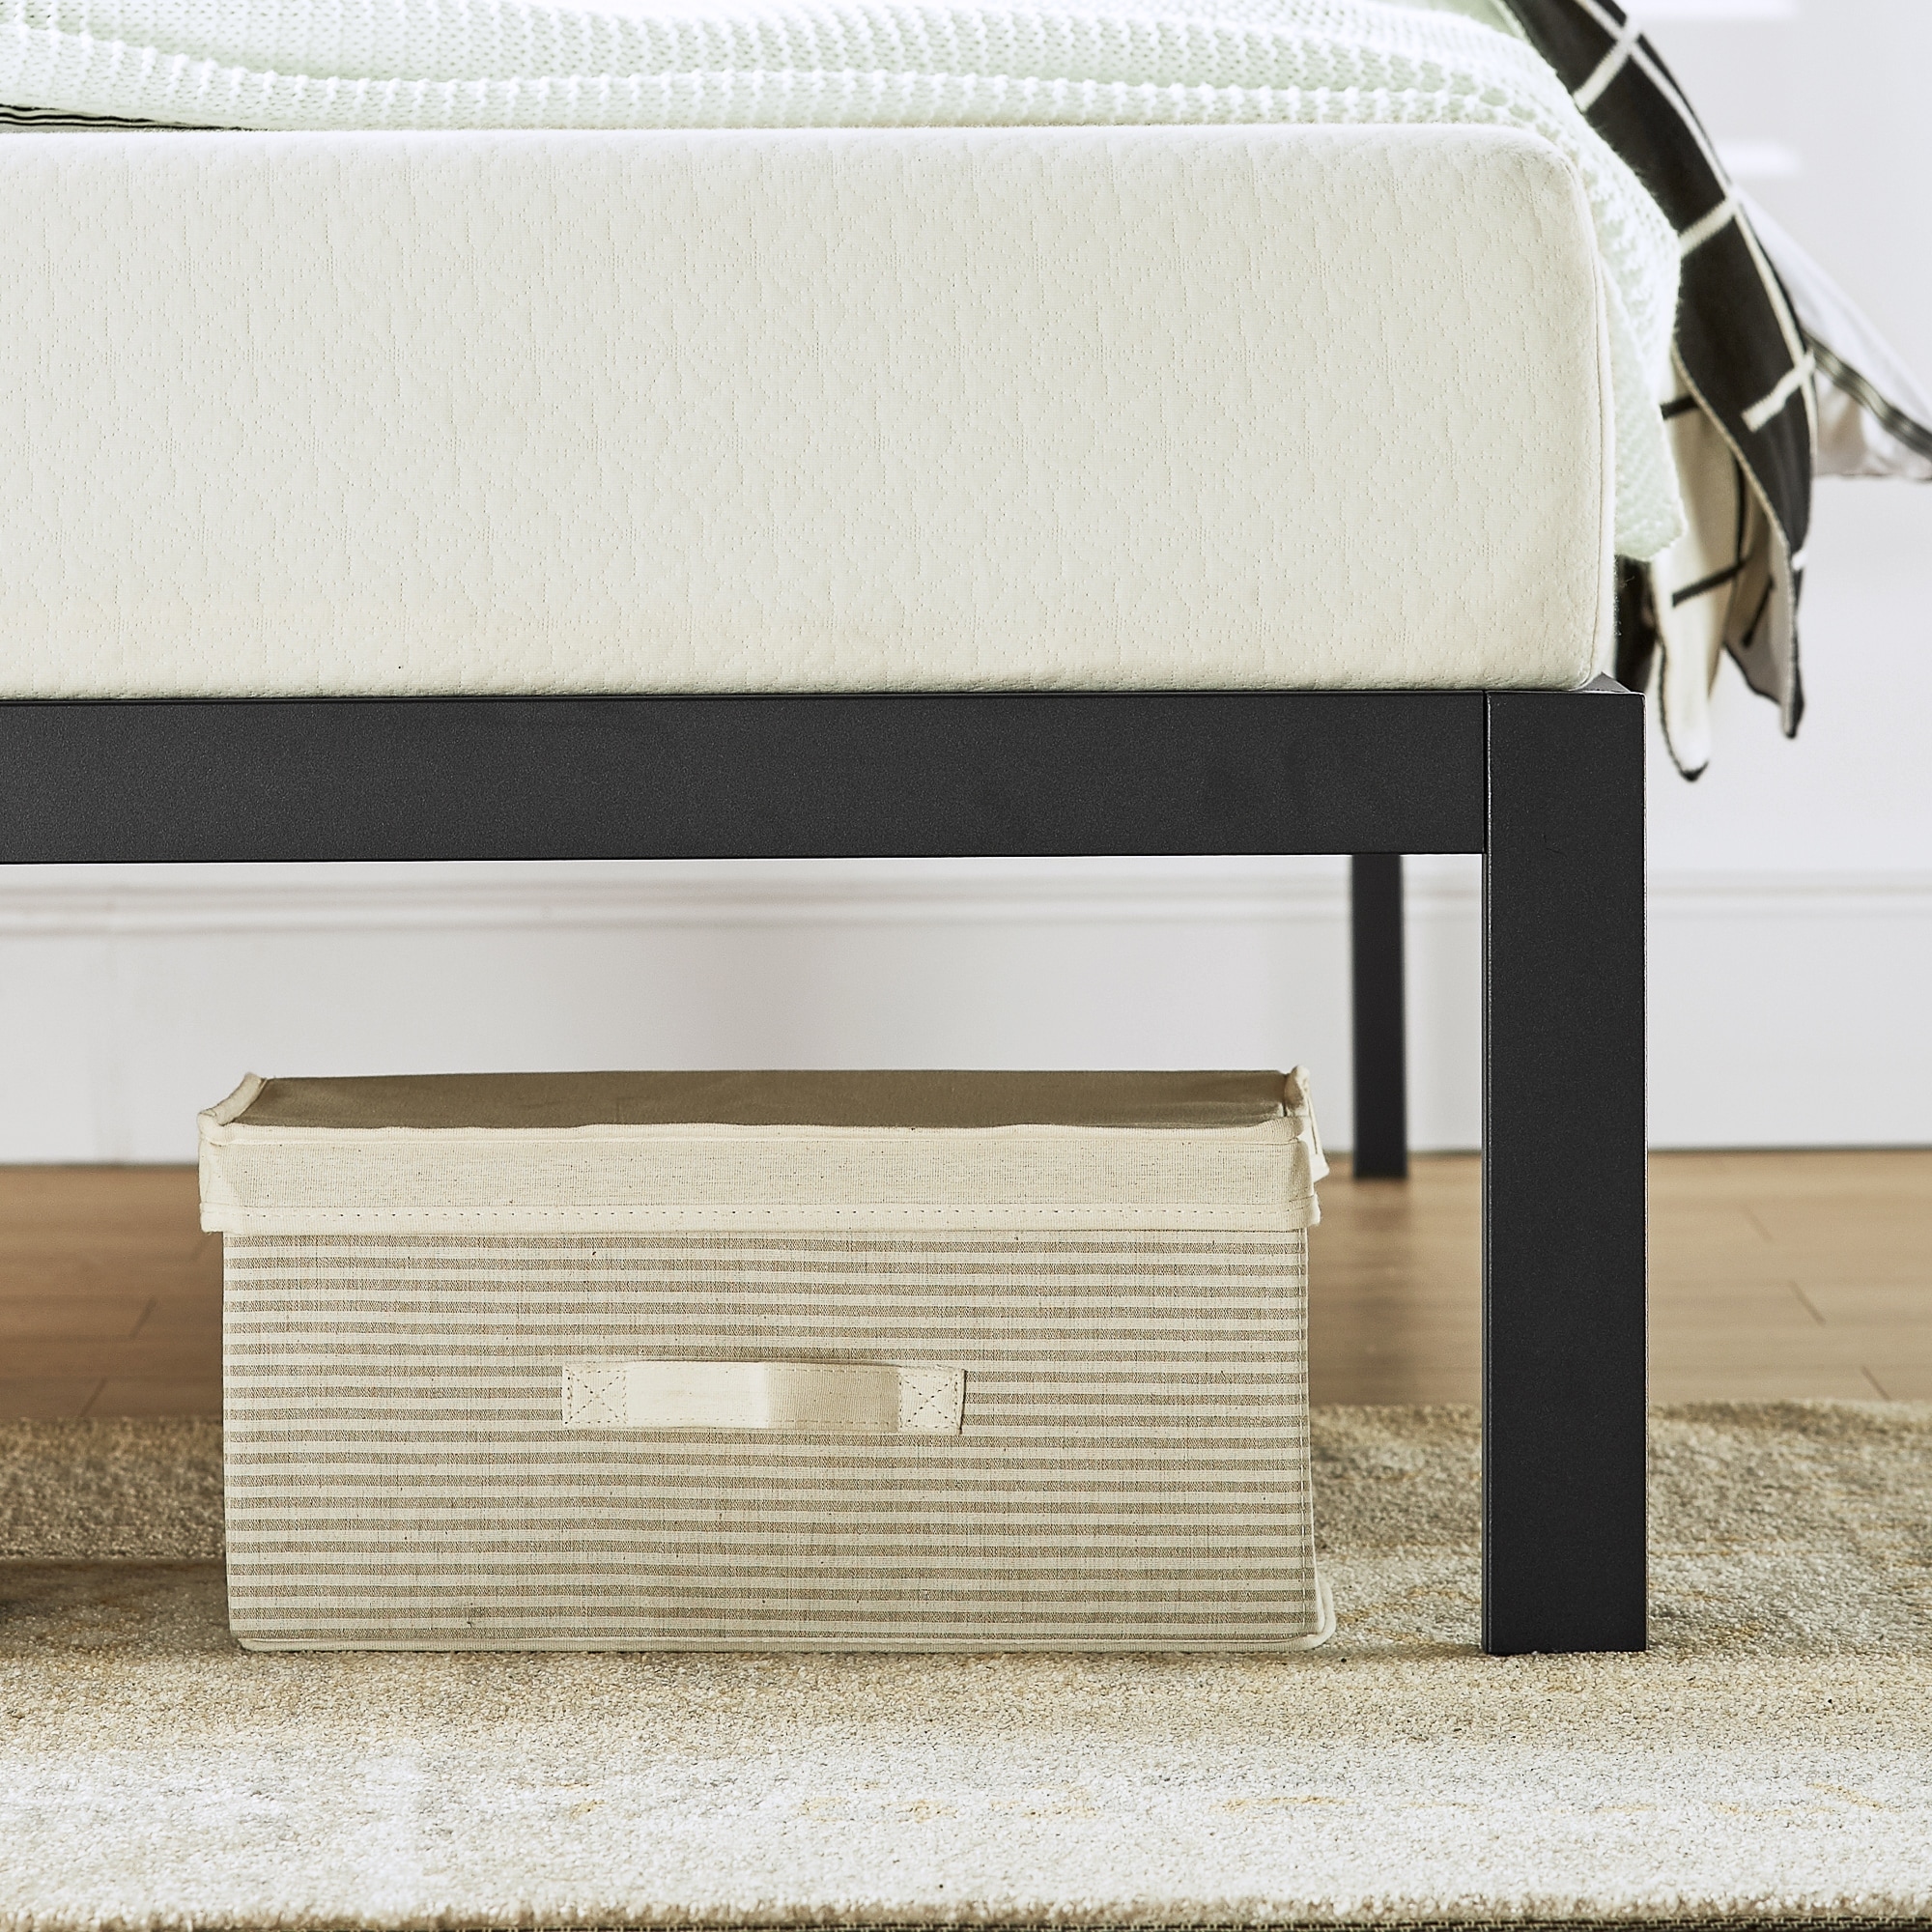 Kasi Metal Platform Bed With Pine Wood Headboard Shelf By Crown Comfort